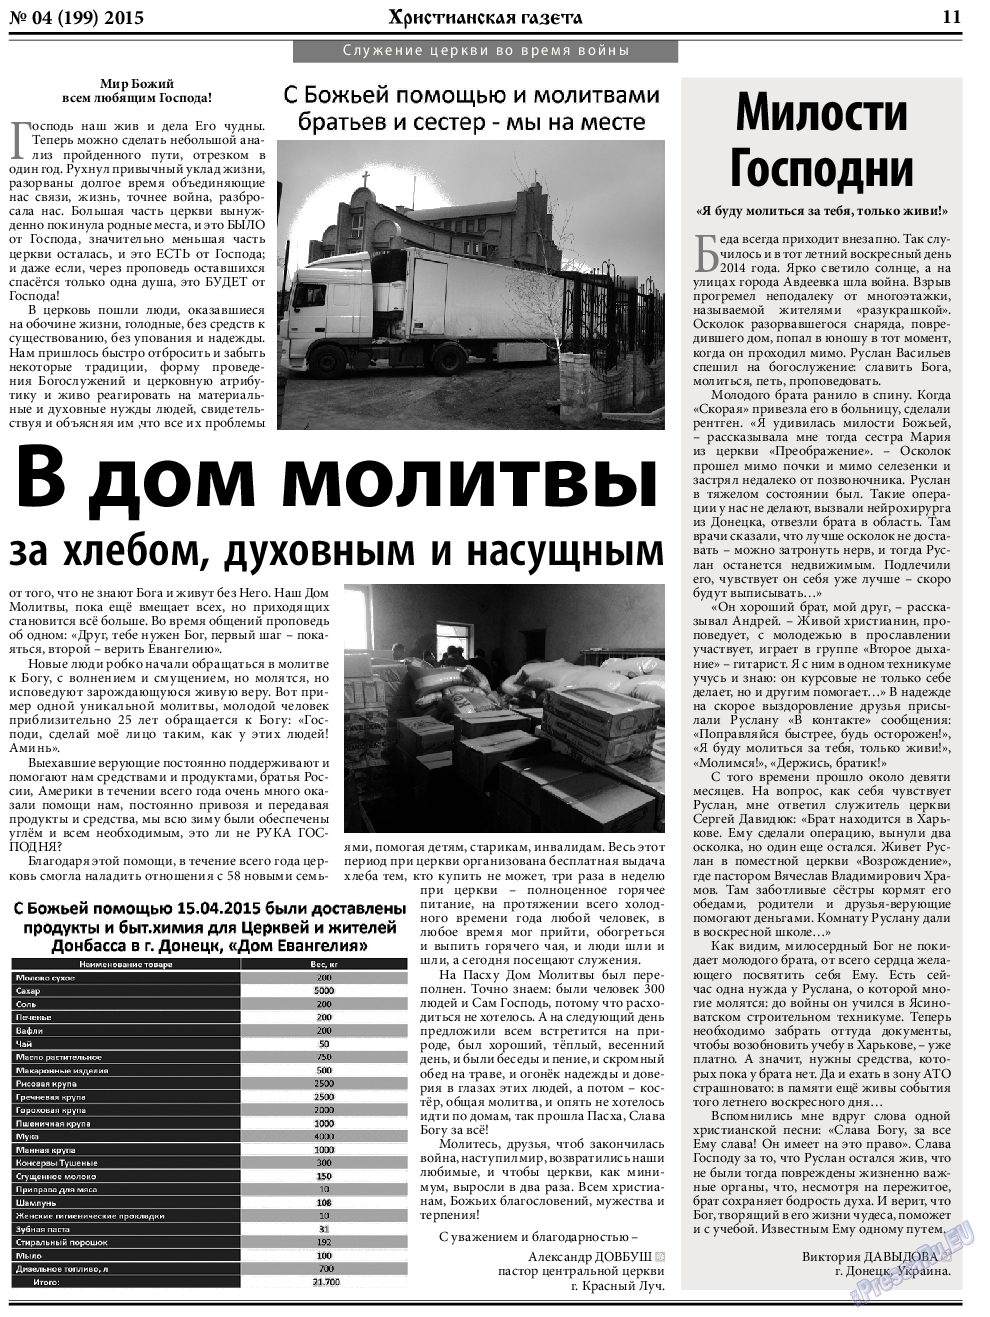 Христианская газета, газета. 2015 №4 стр.11